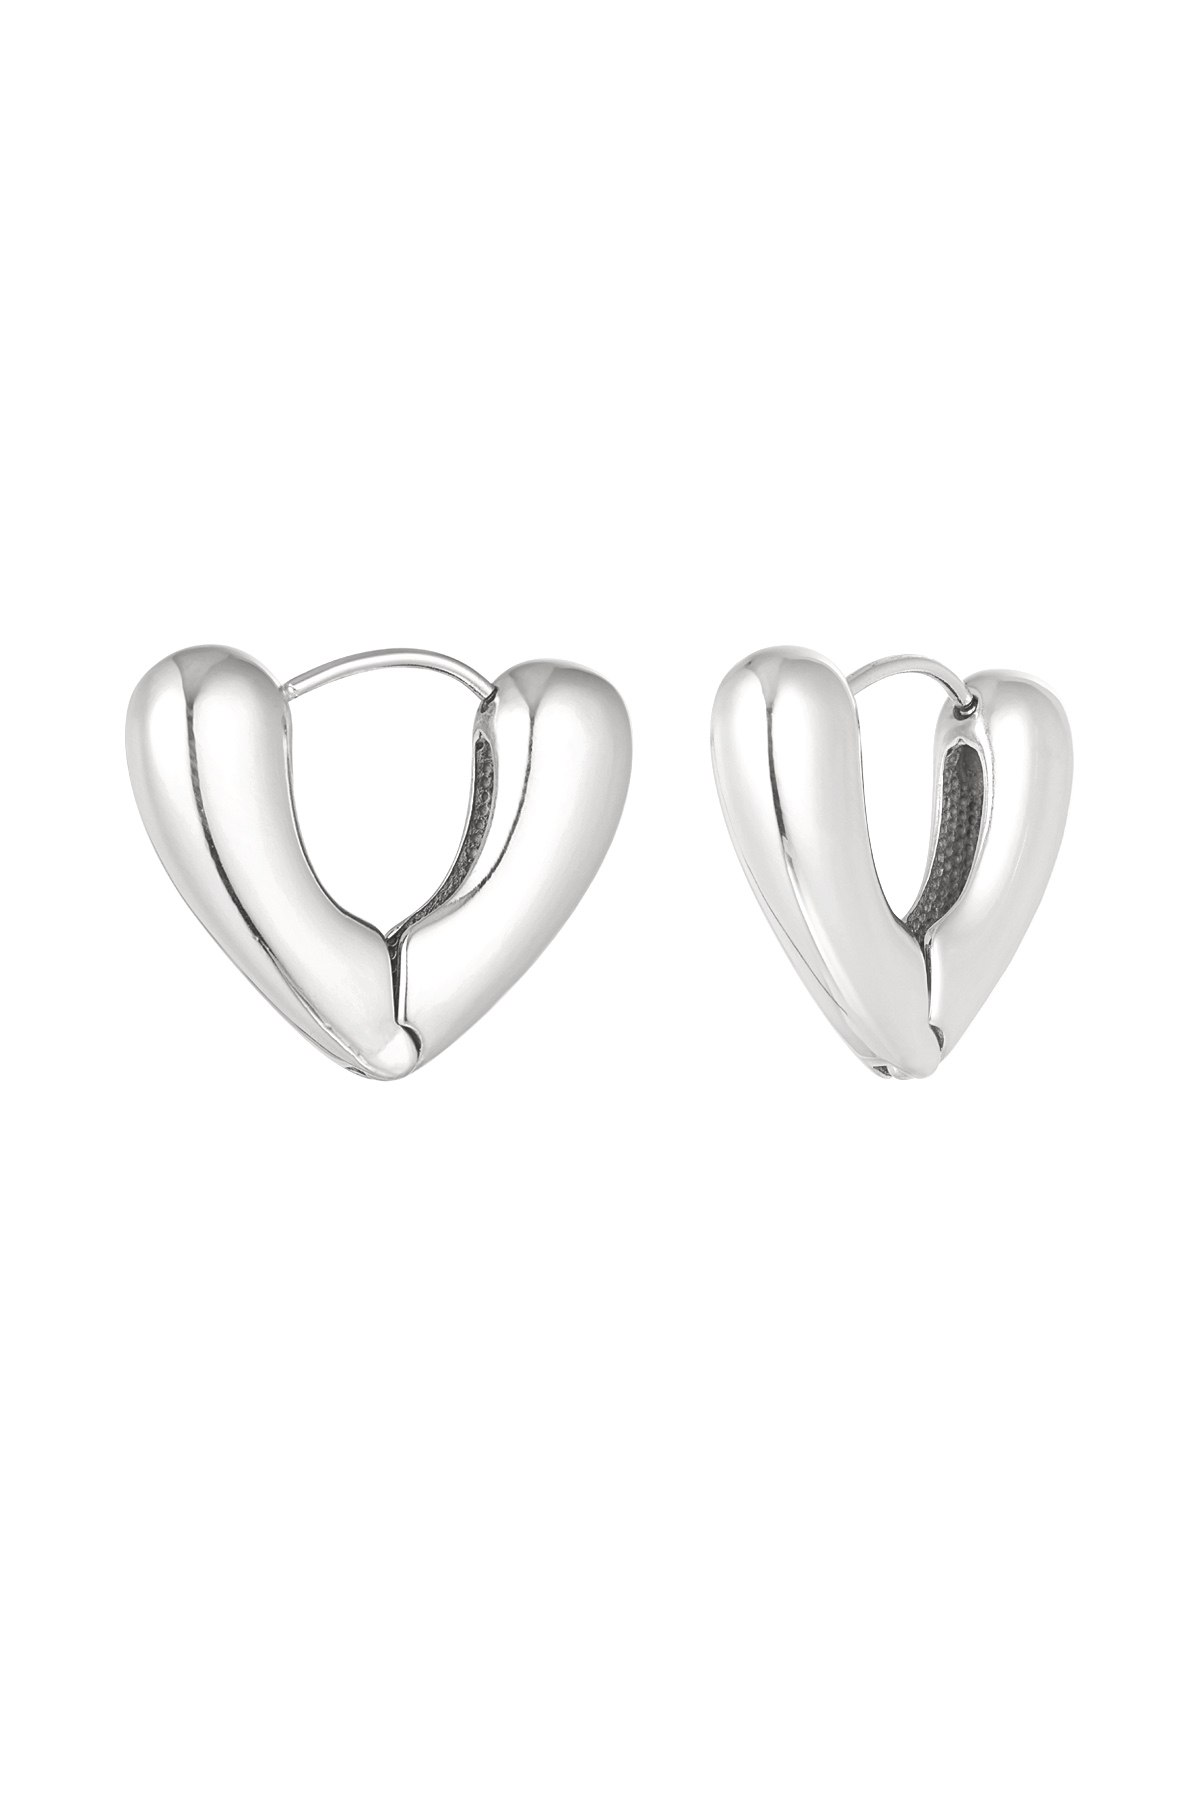 V-shape earrings - silver h5 